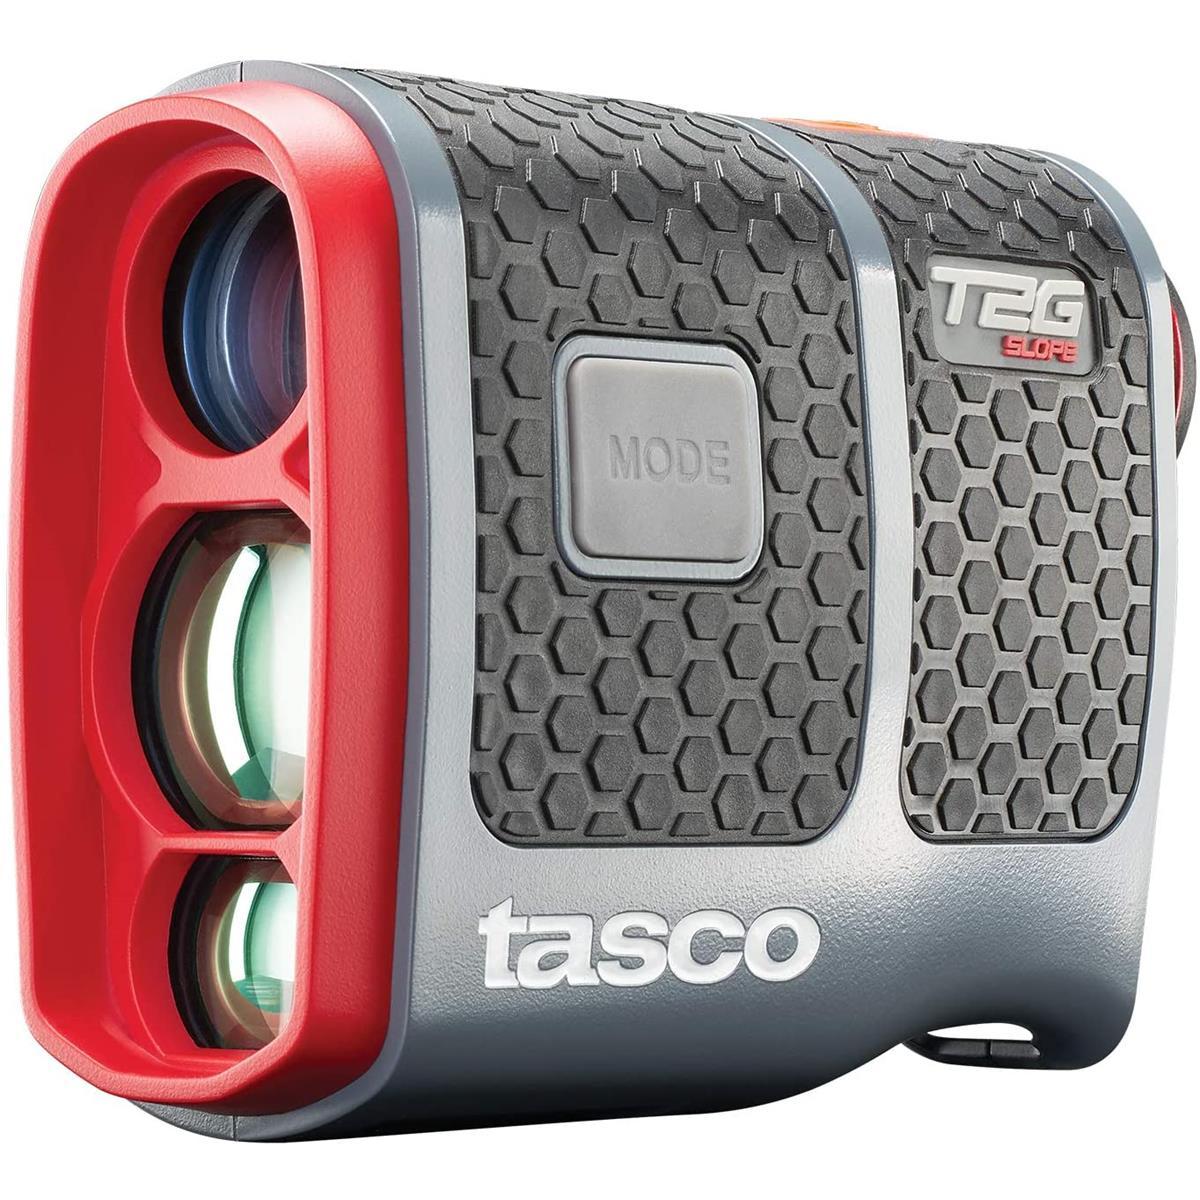 Tasco T2G Slope Golf Laser Rangefinder for $69.95 Shipped